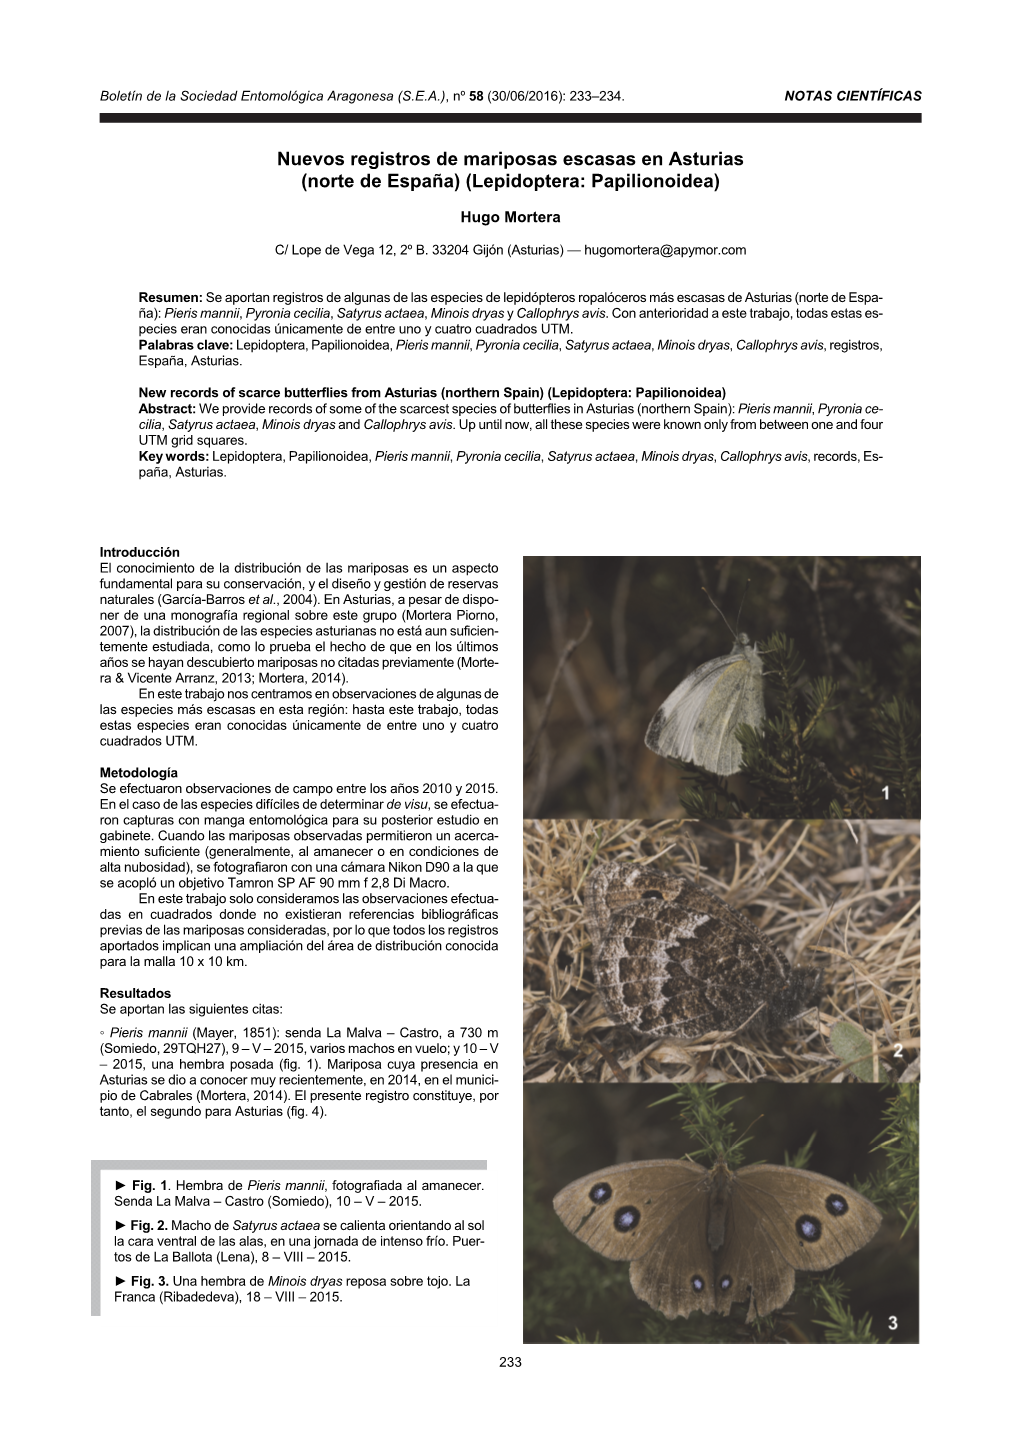 Nuevos Registros De Mariposas Escasas En Asturias (Norte De España) (Lepidoptera: Papilionoidea)